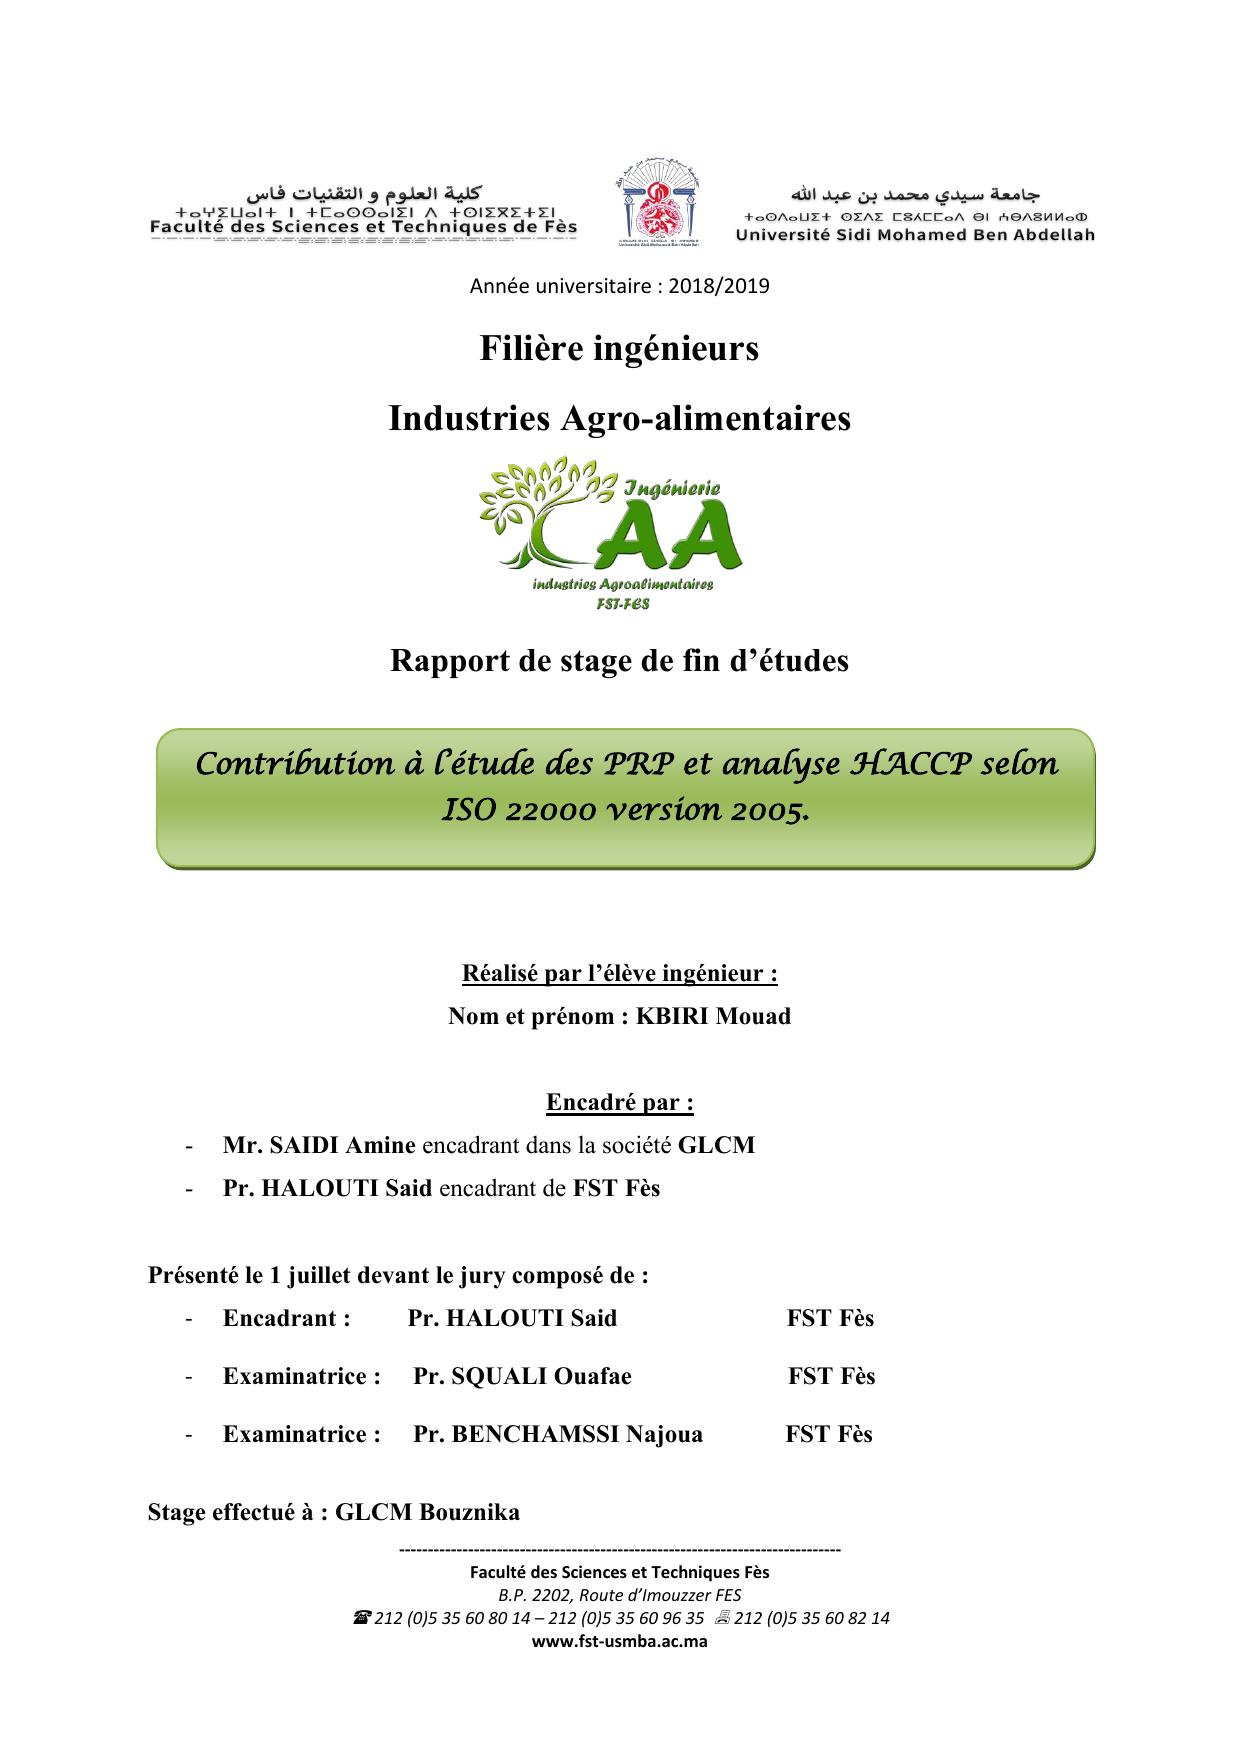 Contribution à l’étude des PRP et analyse HACCP selon ISO 22000 version 2005